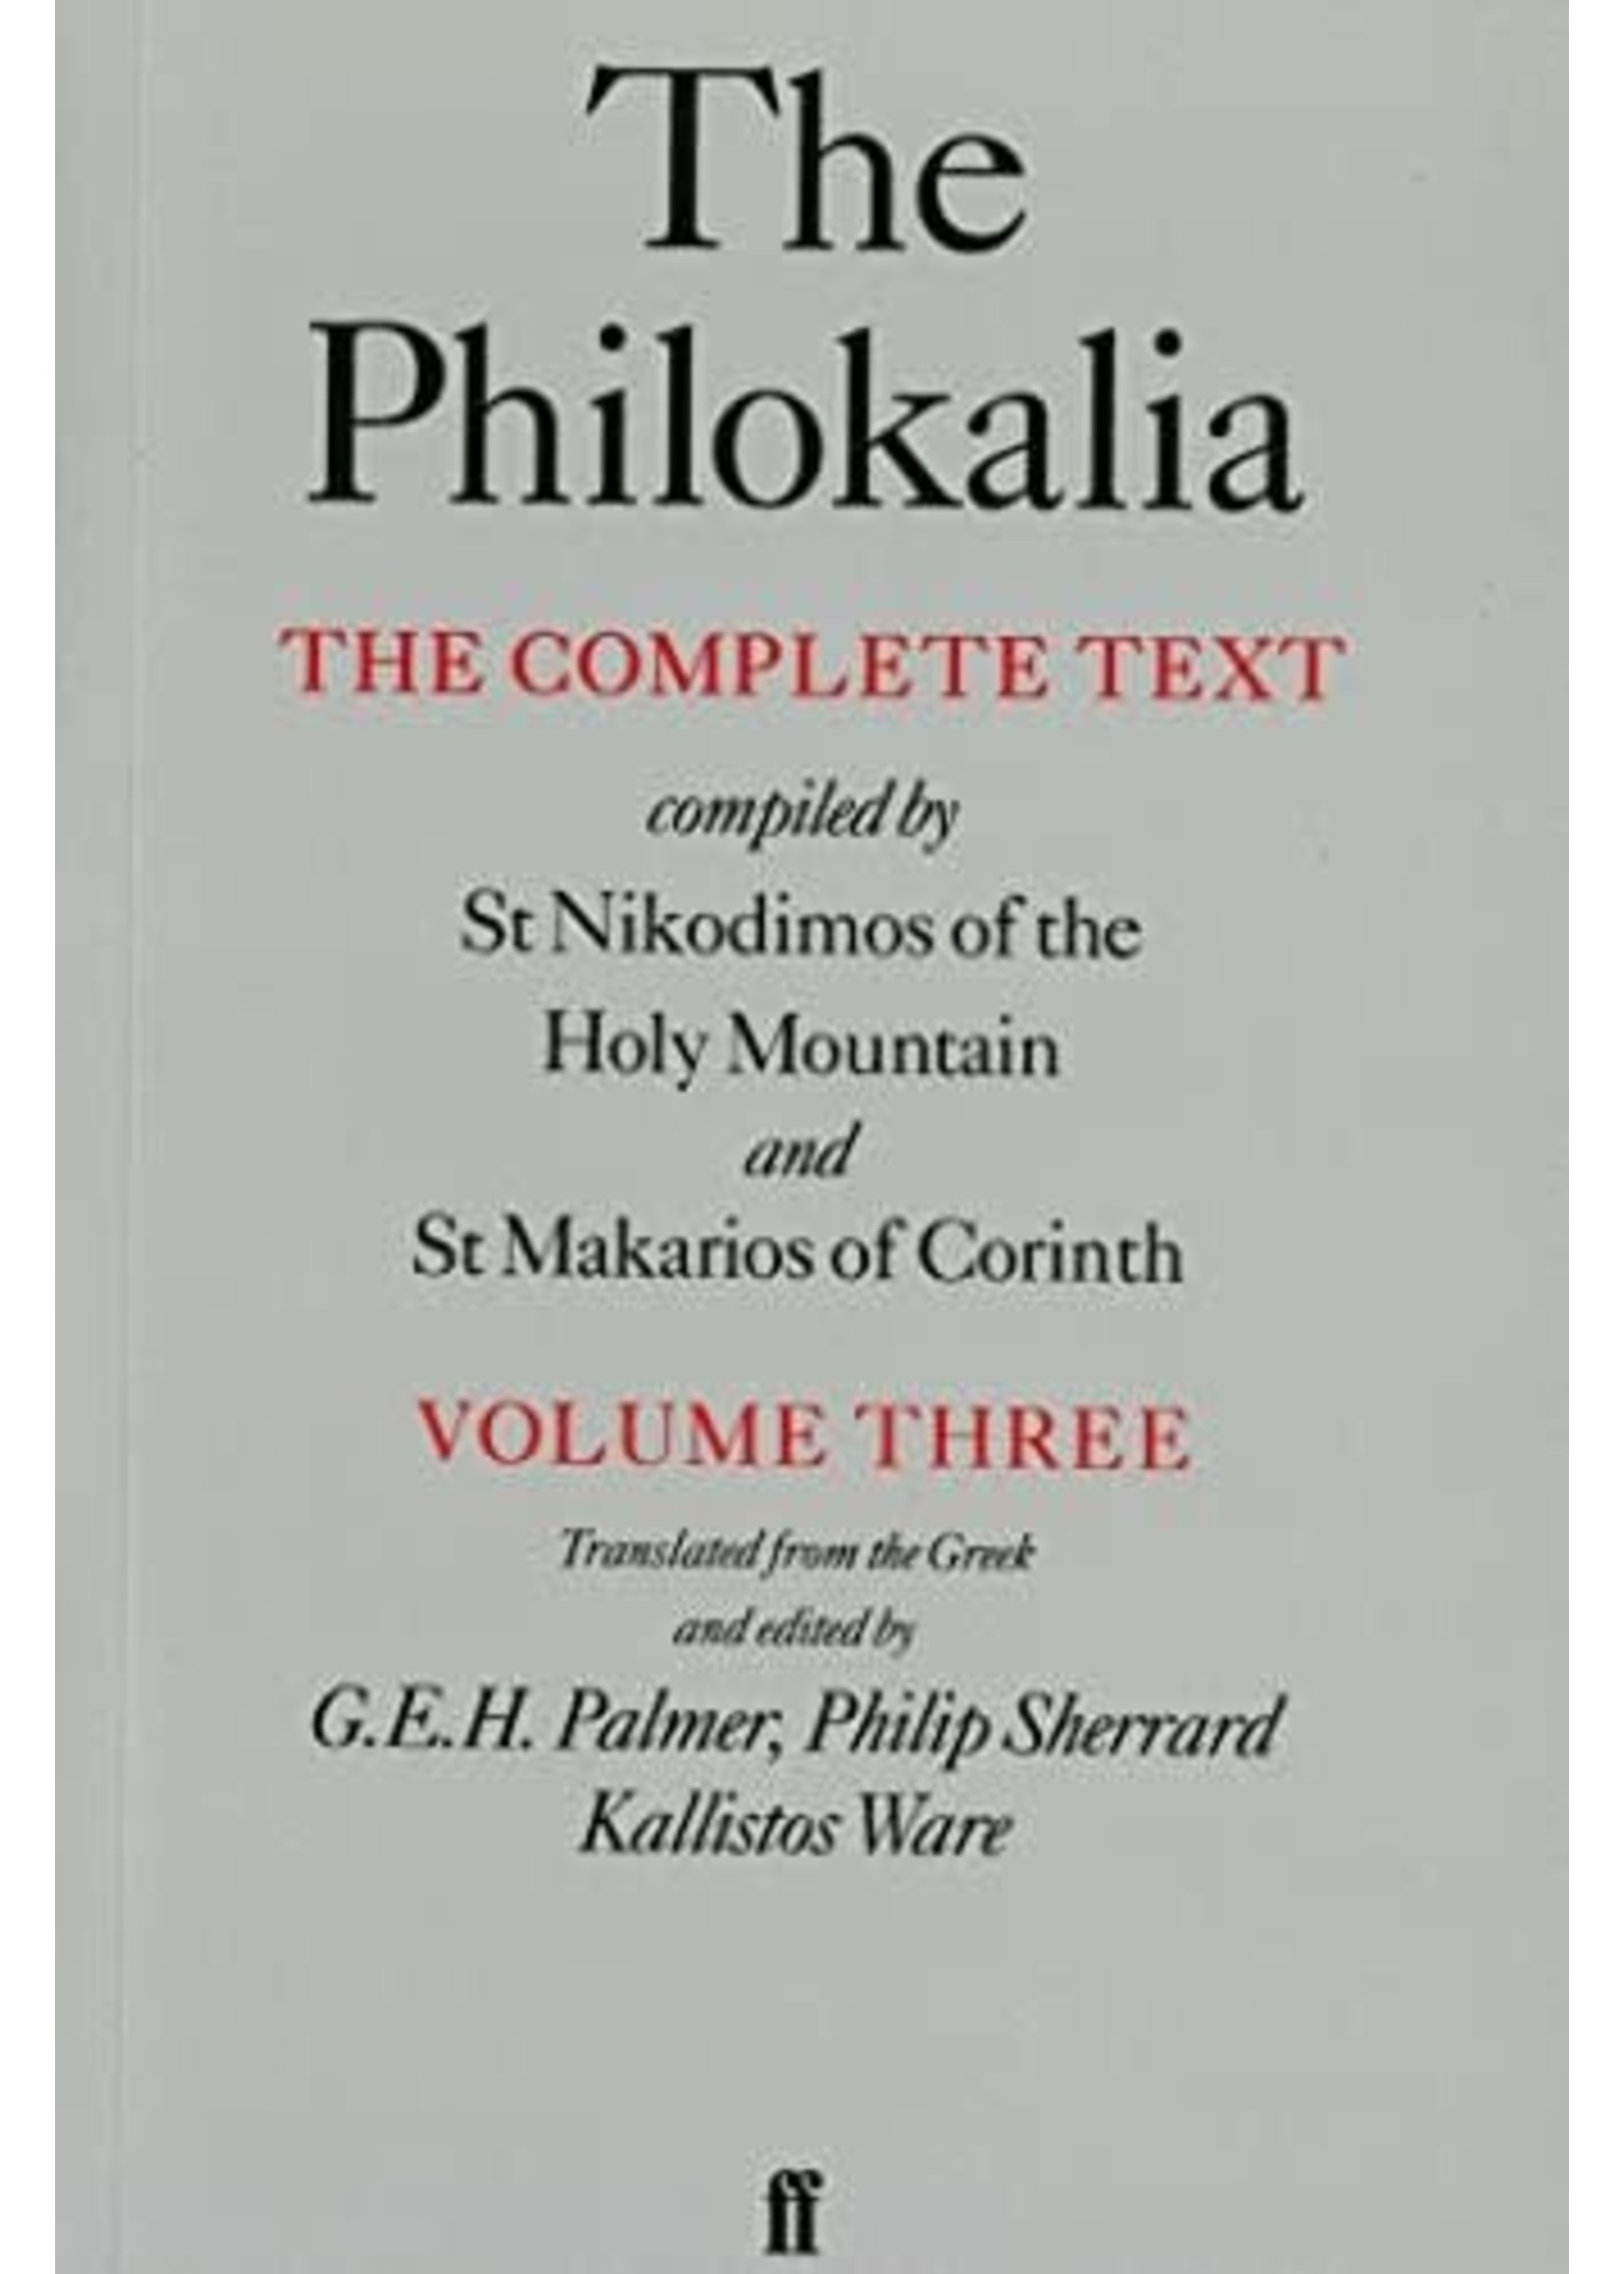 The Philokalia, vol 3